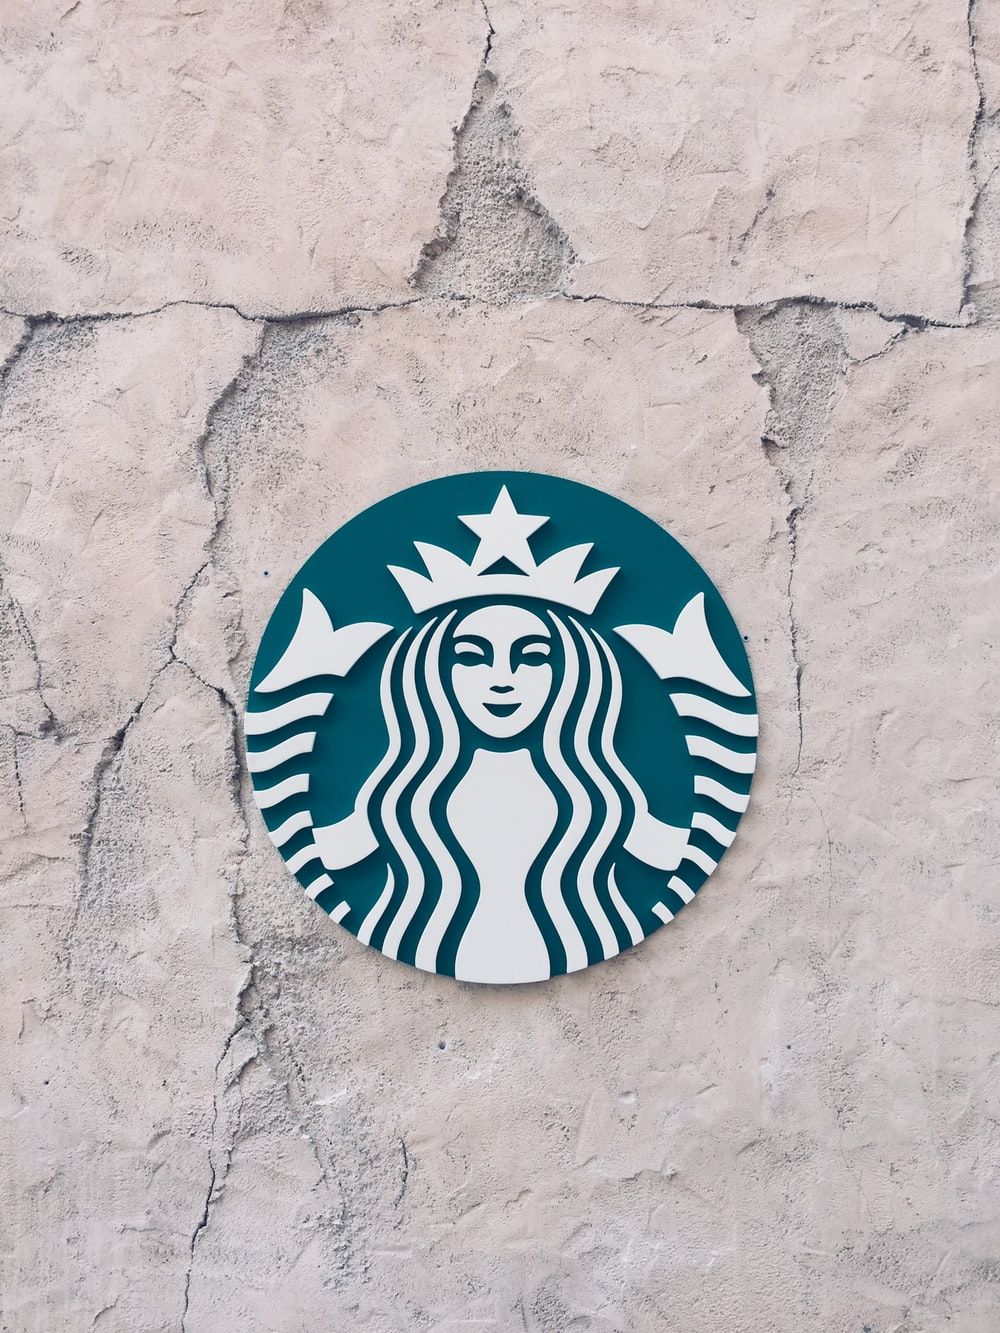 Starbucks Wallpaper: Free HD Download [HQ]